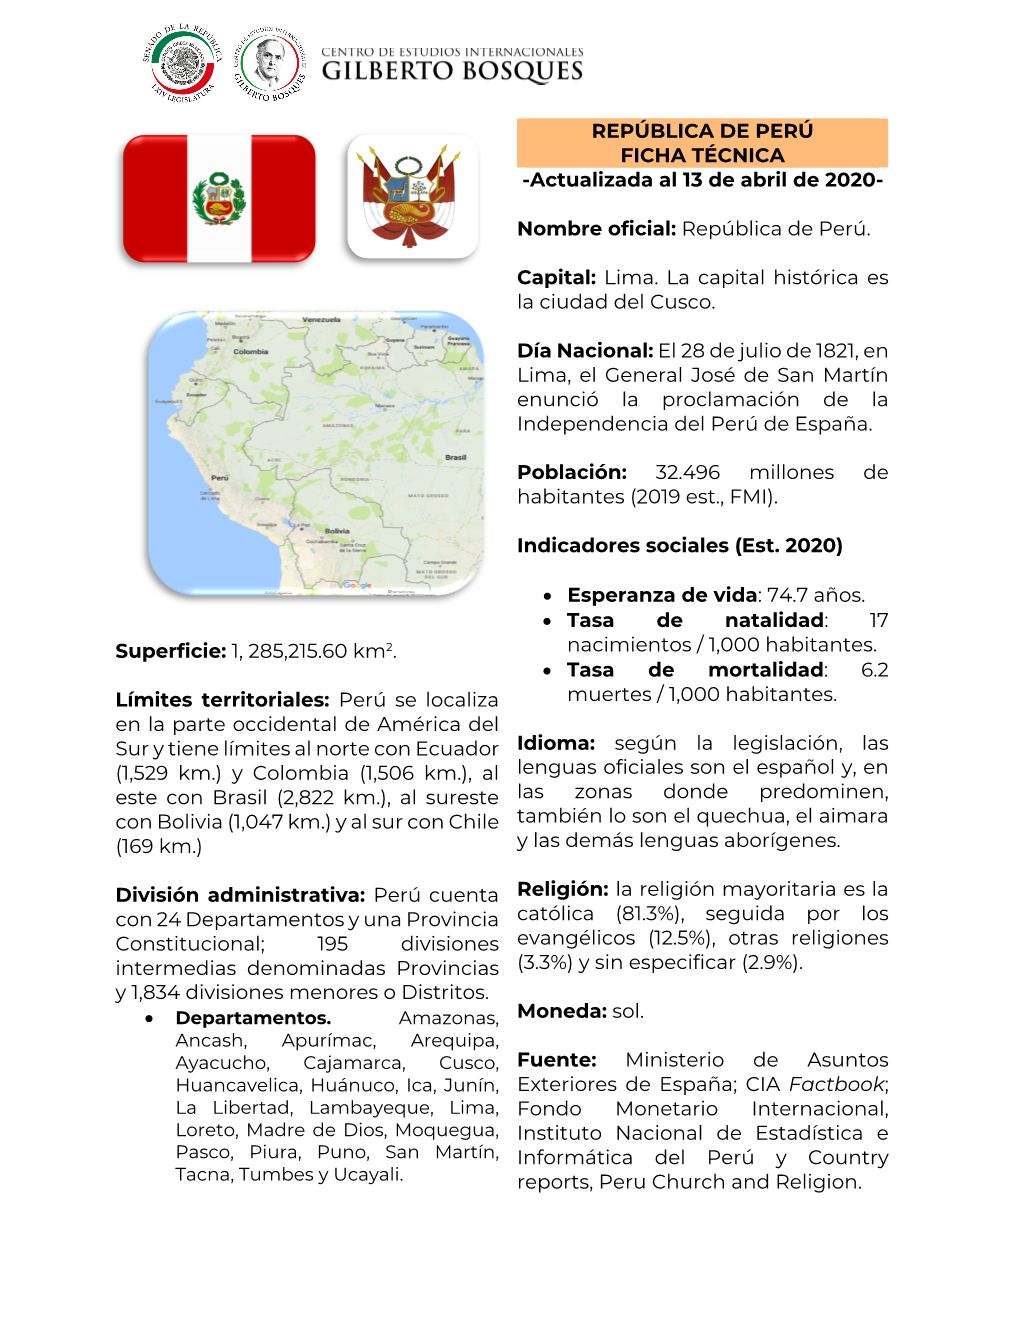 REPÚBLICA DE PERÚ FICHA TÉCNICA -Actualizada Al 13 De Abril De 2020